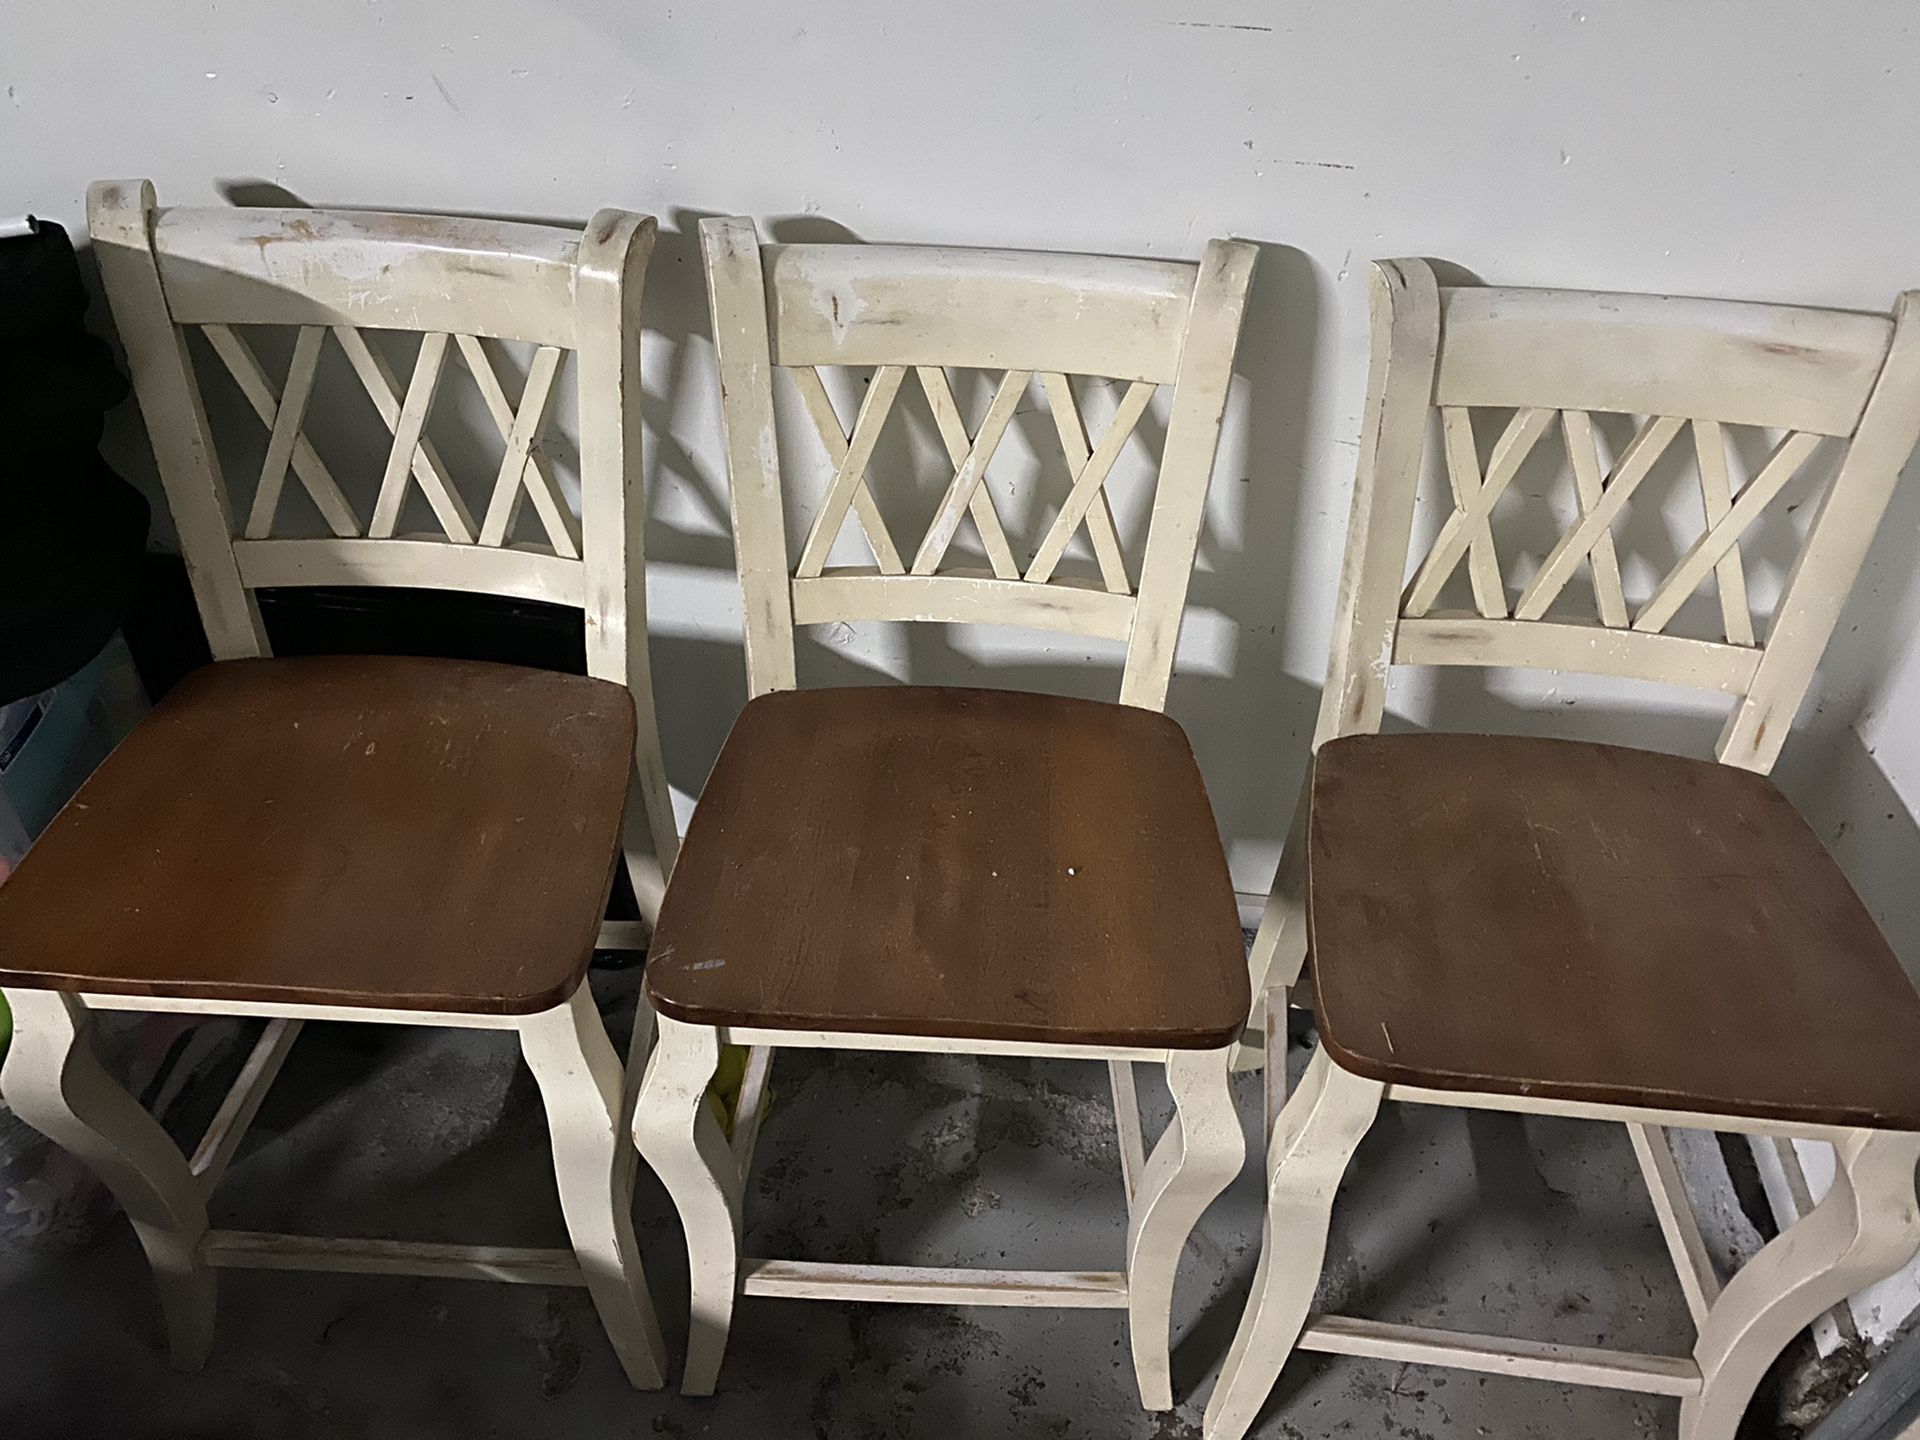 Three farmhouse rustic chairs